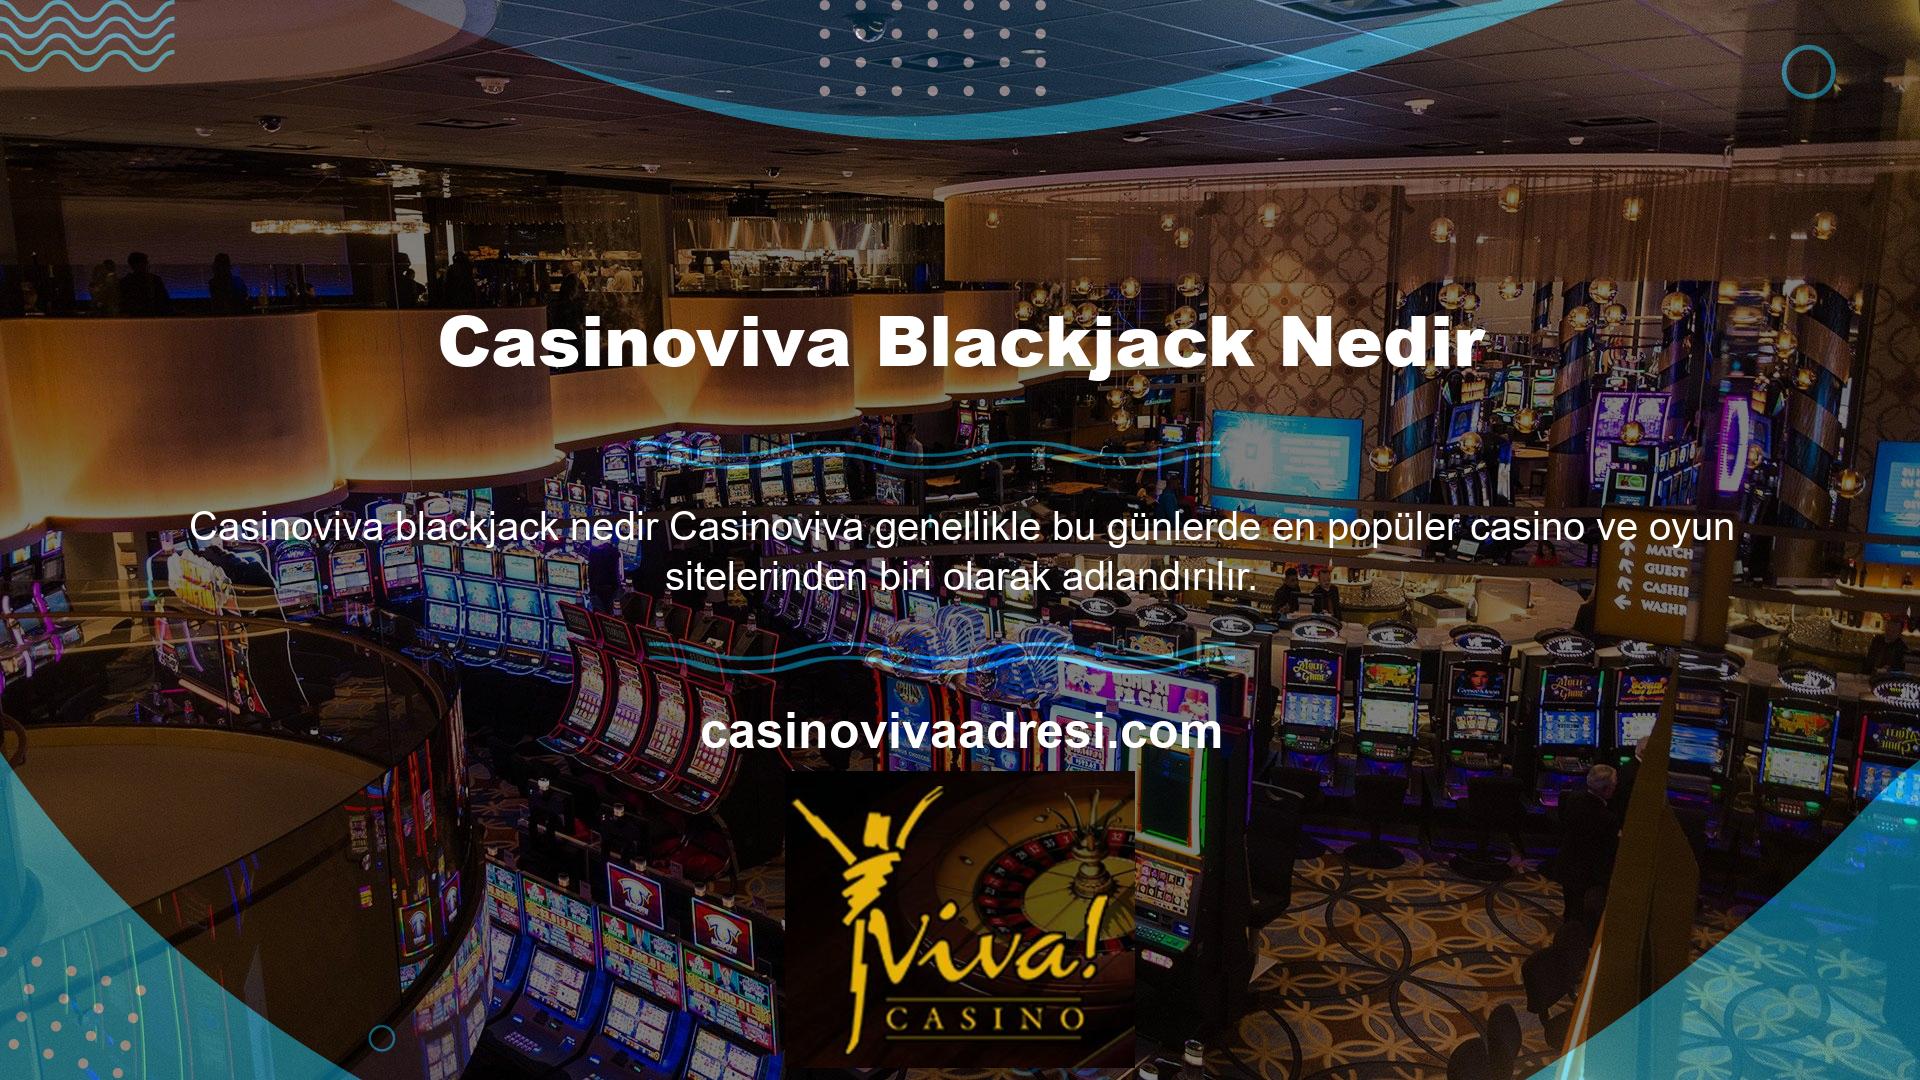 Casinoviva, yüzlerce farklı spor bahsi ve casino oyunu oynayarak para kazanmak isteyenlerin uğrak yeridir